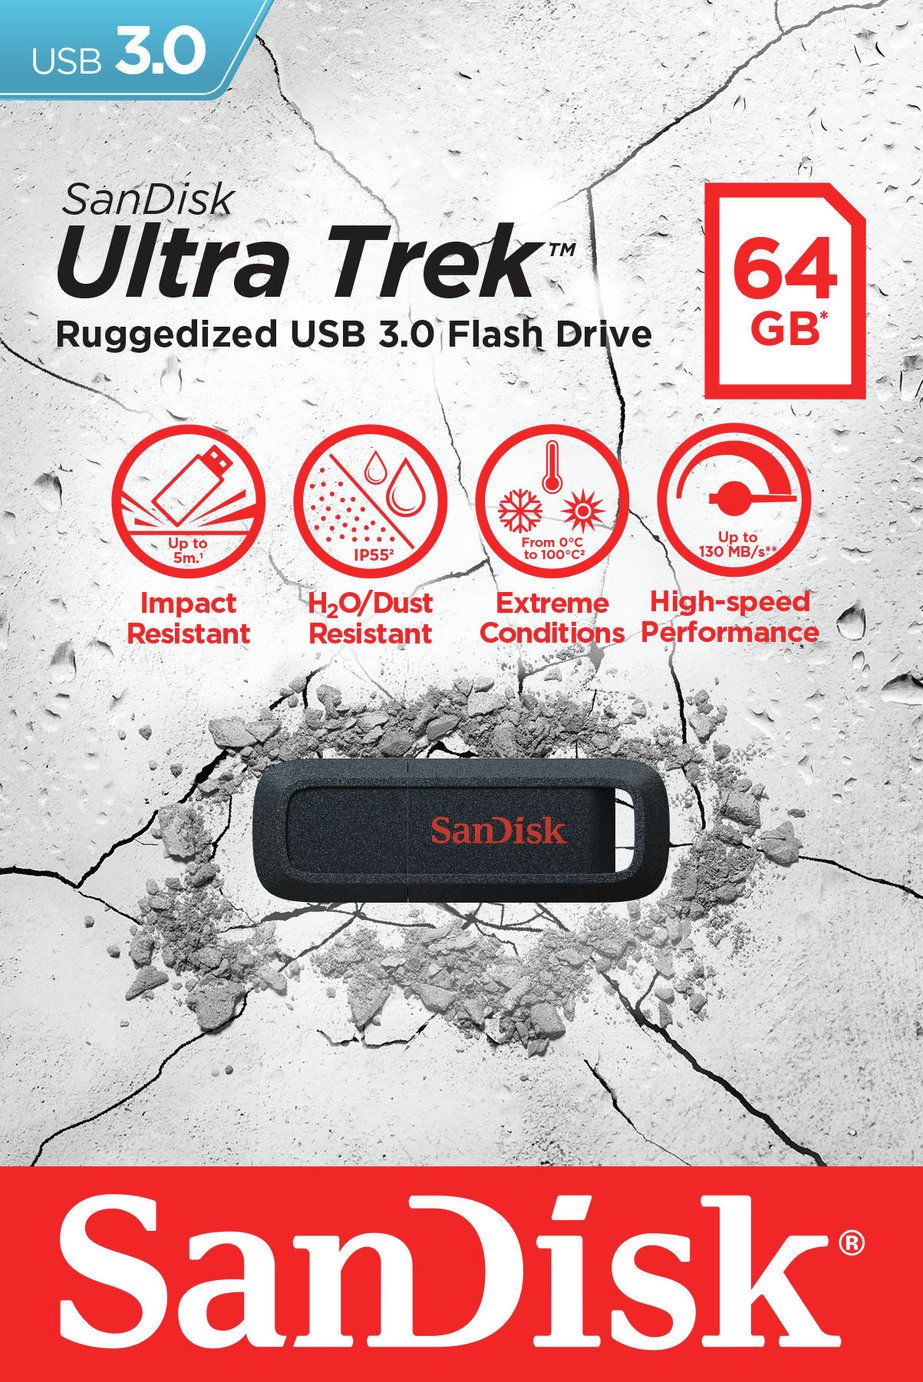 SanDisk Ultra Trek USB 3.0 Flash Drive - 64GB